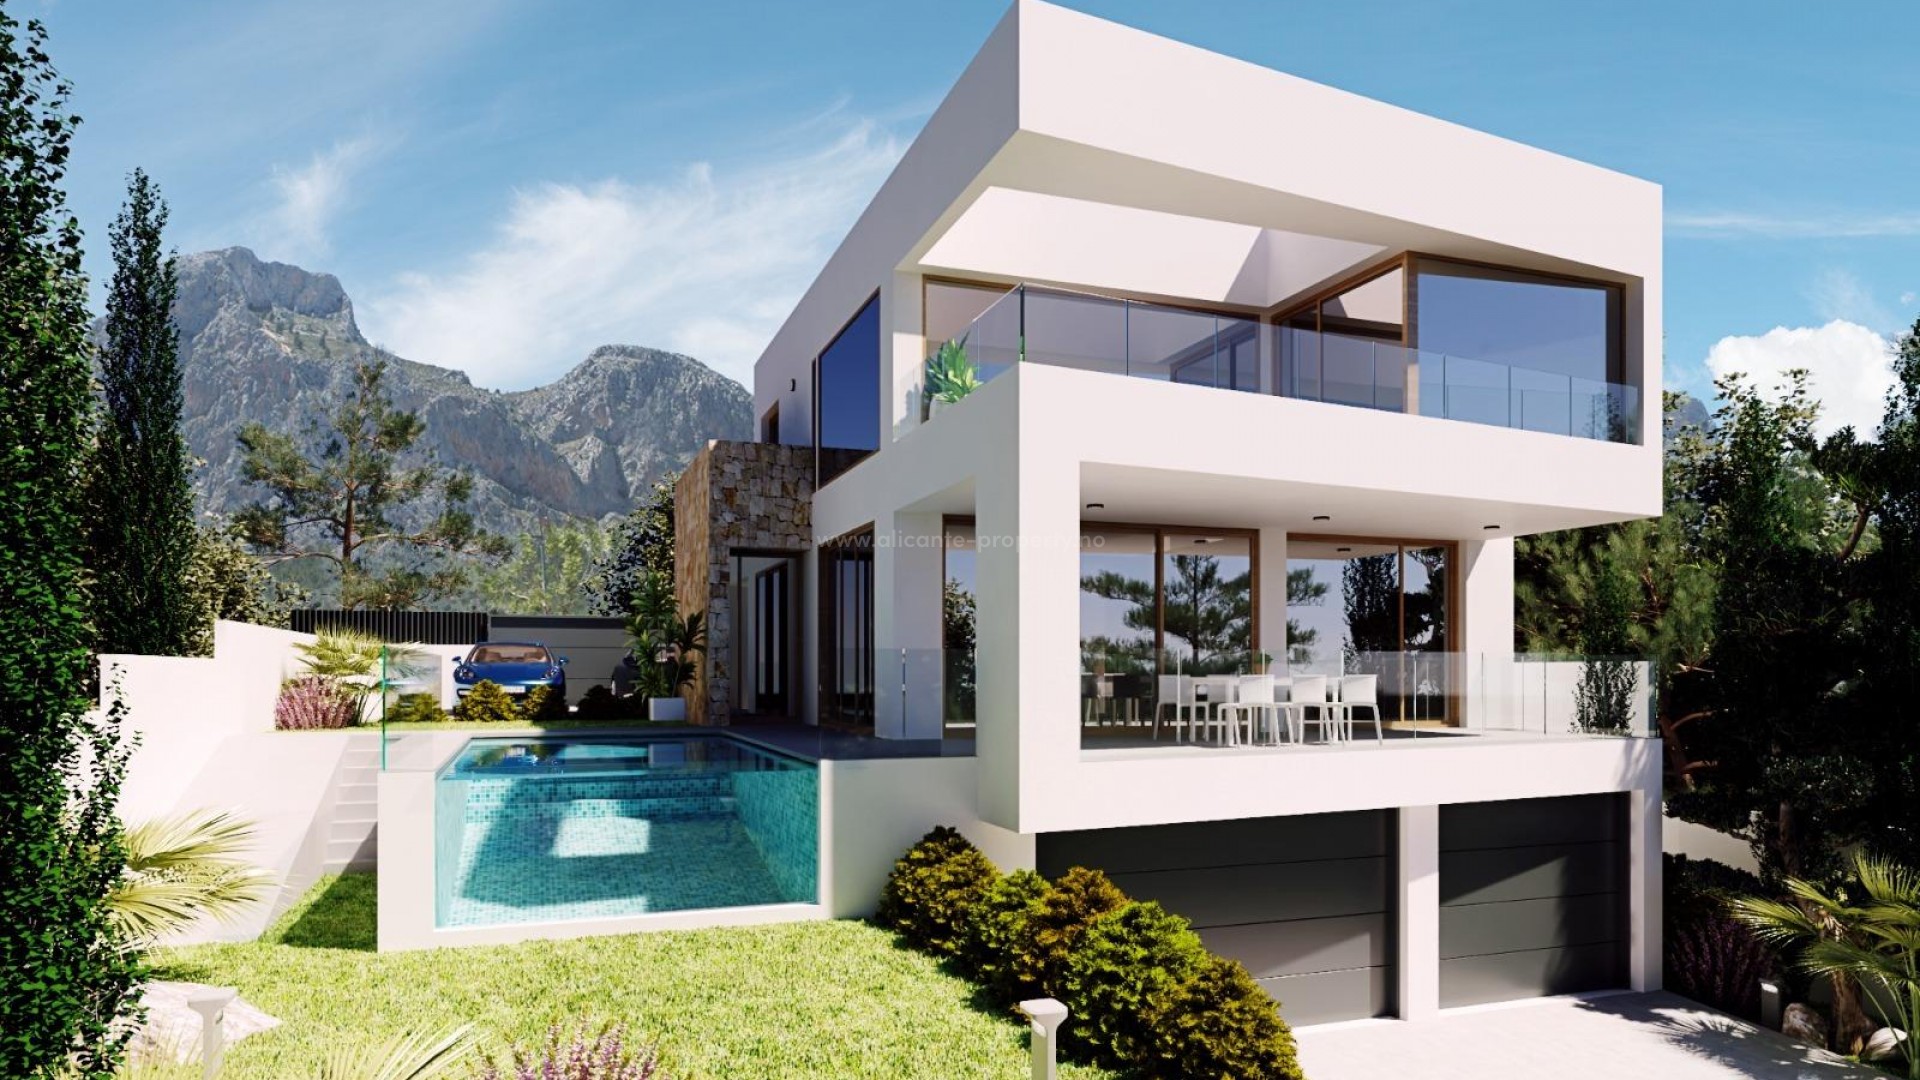 Nye villaer/hus i Polop, Alicante, 3 soverom, 3 bad, hage med basseng, overbygd terrasse og en stor åpen terrasse, utsikt over havet og fjellene